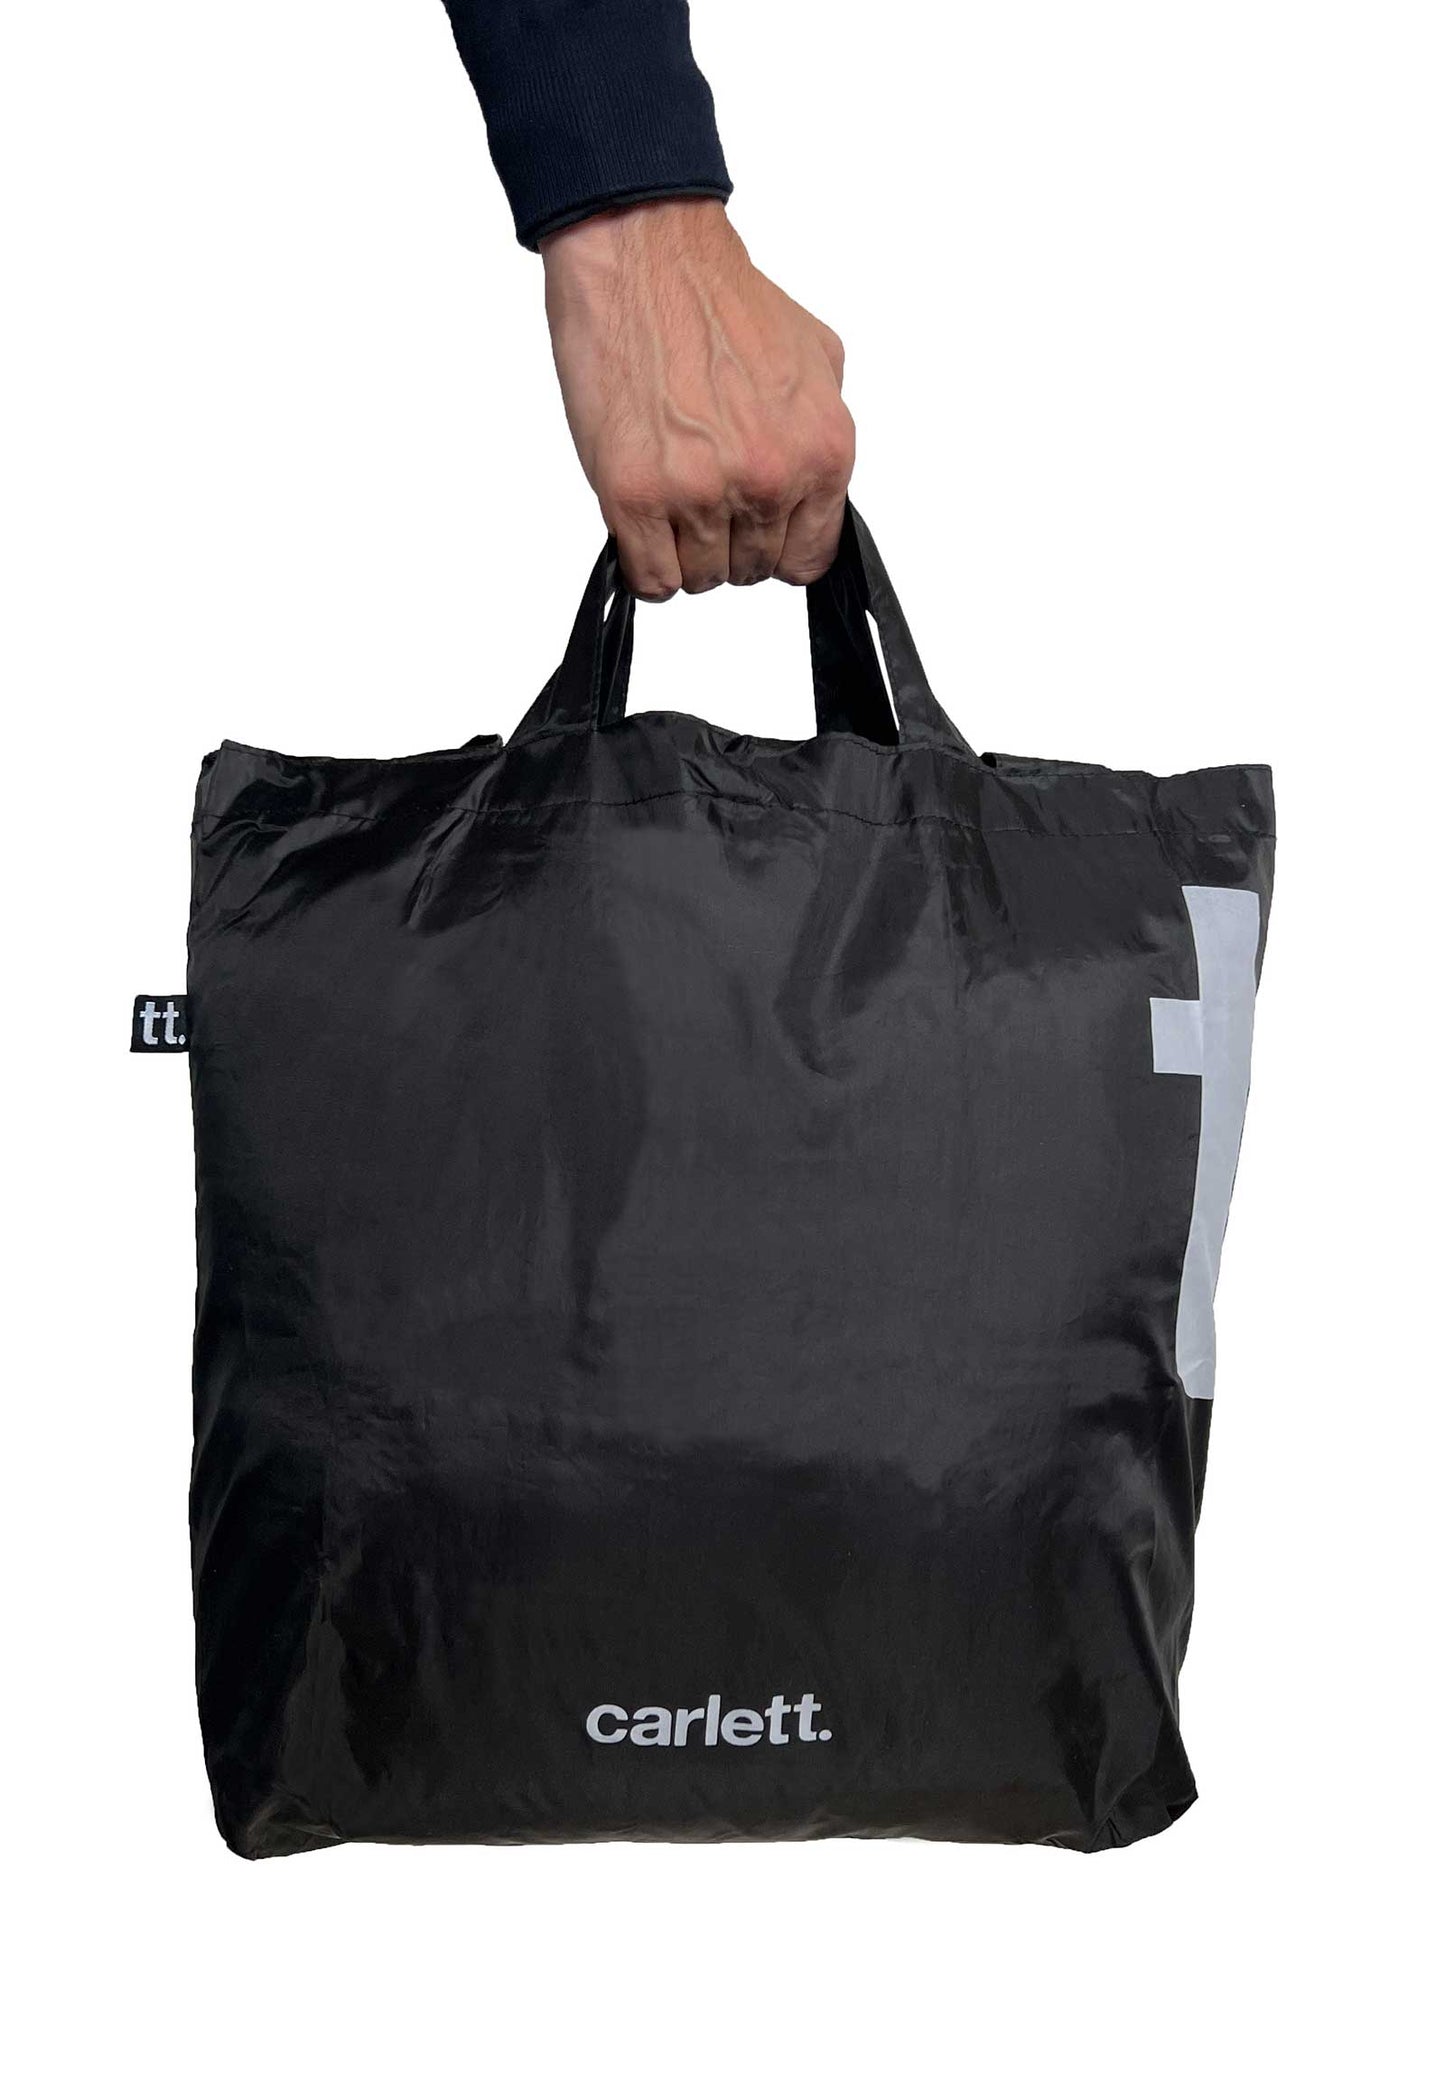 Carlett wiederverwendbare Tasche